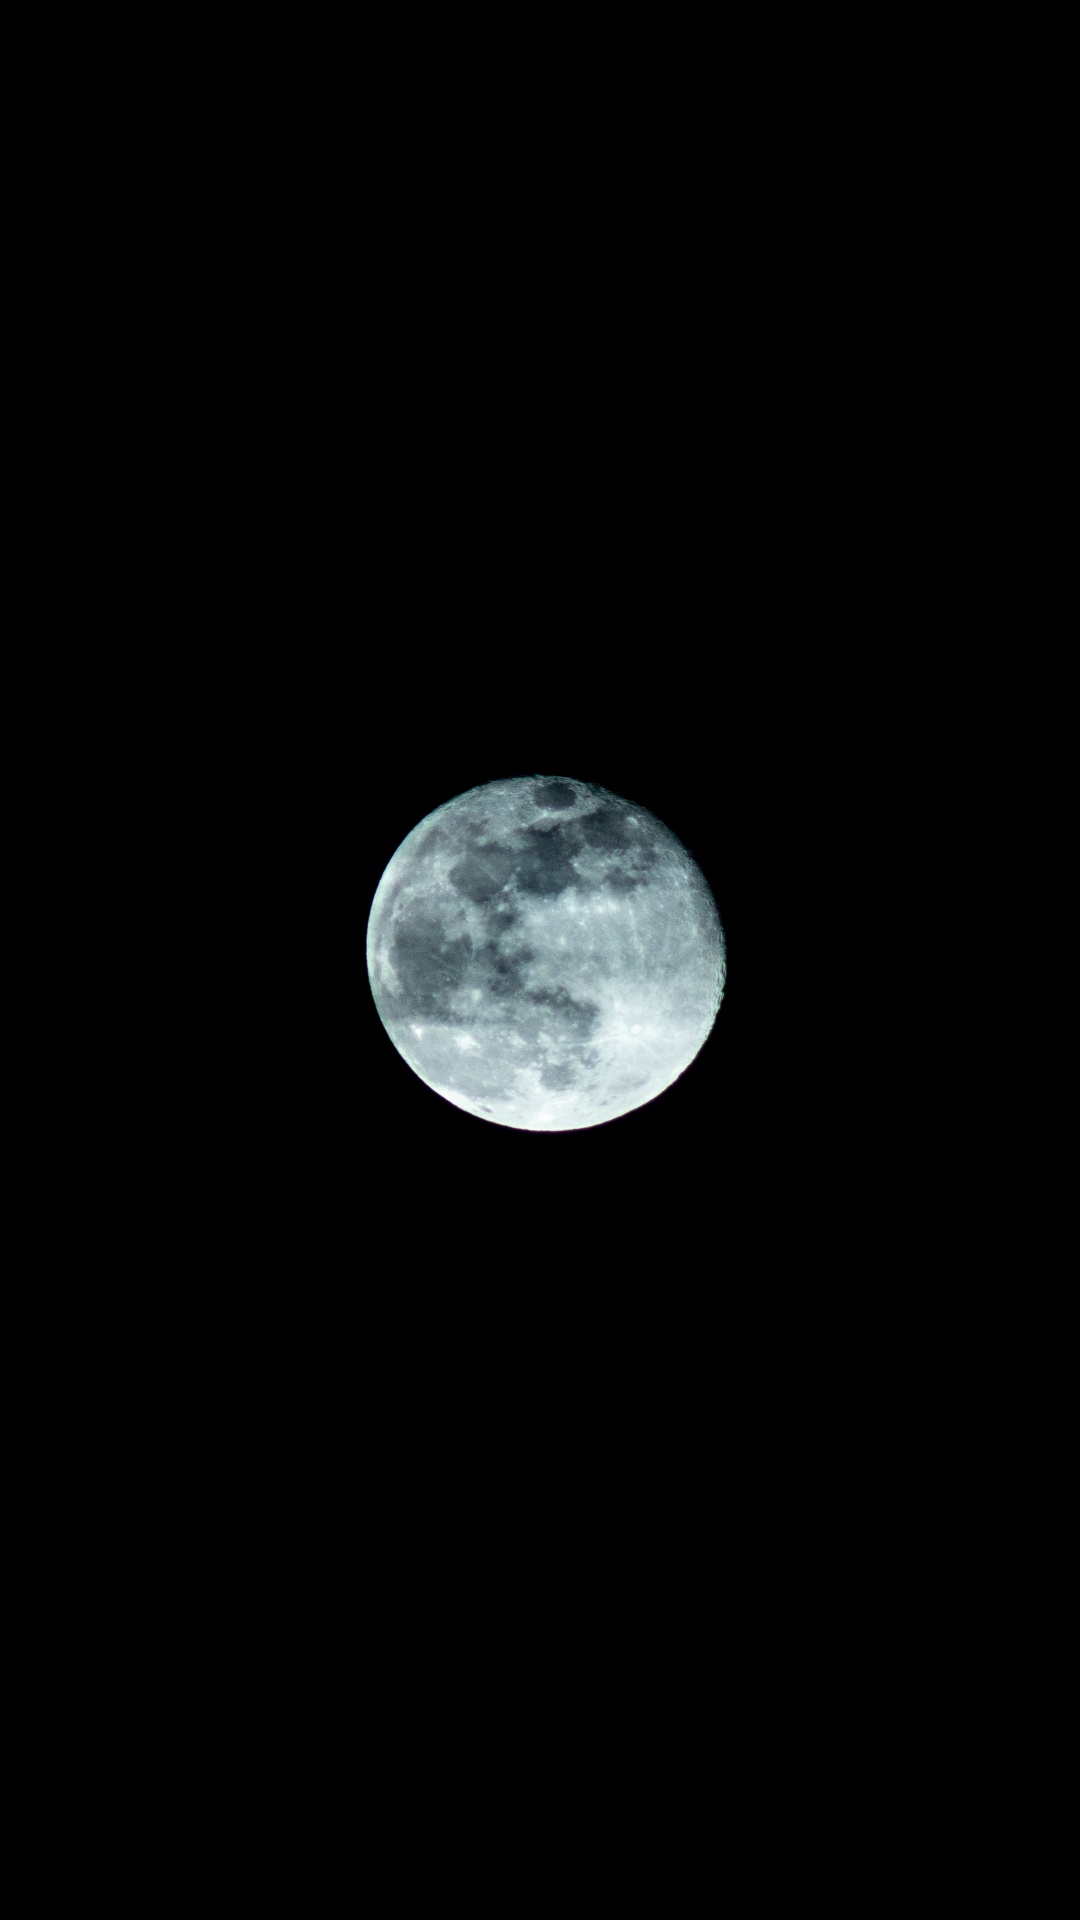 Full Moon in Dark Night Sky. Wallpaper in 1080x1920 Resolution